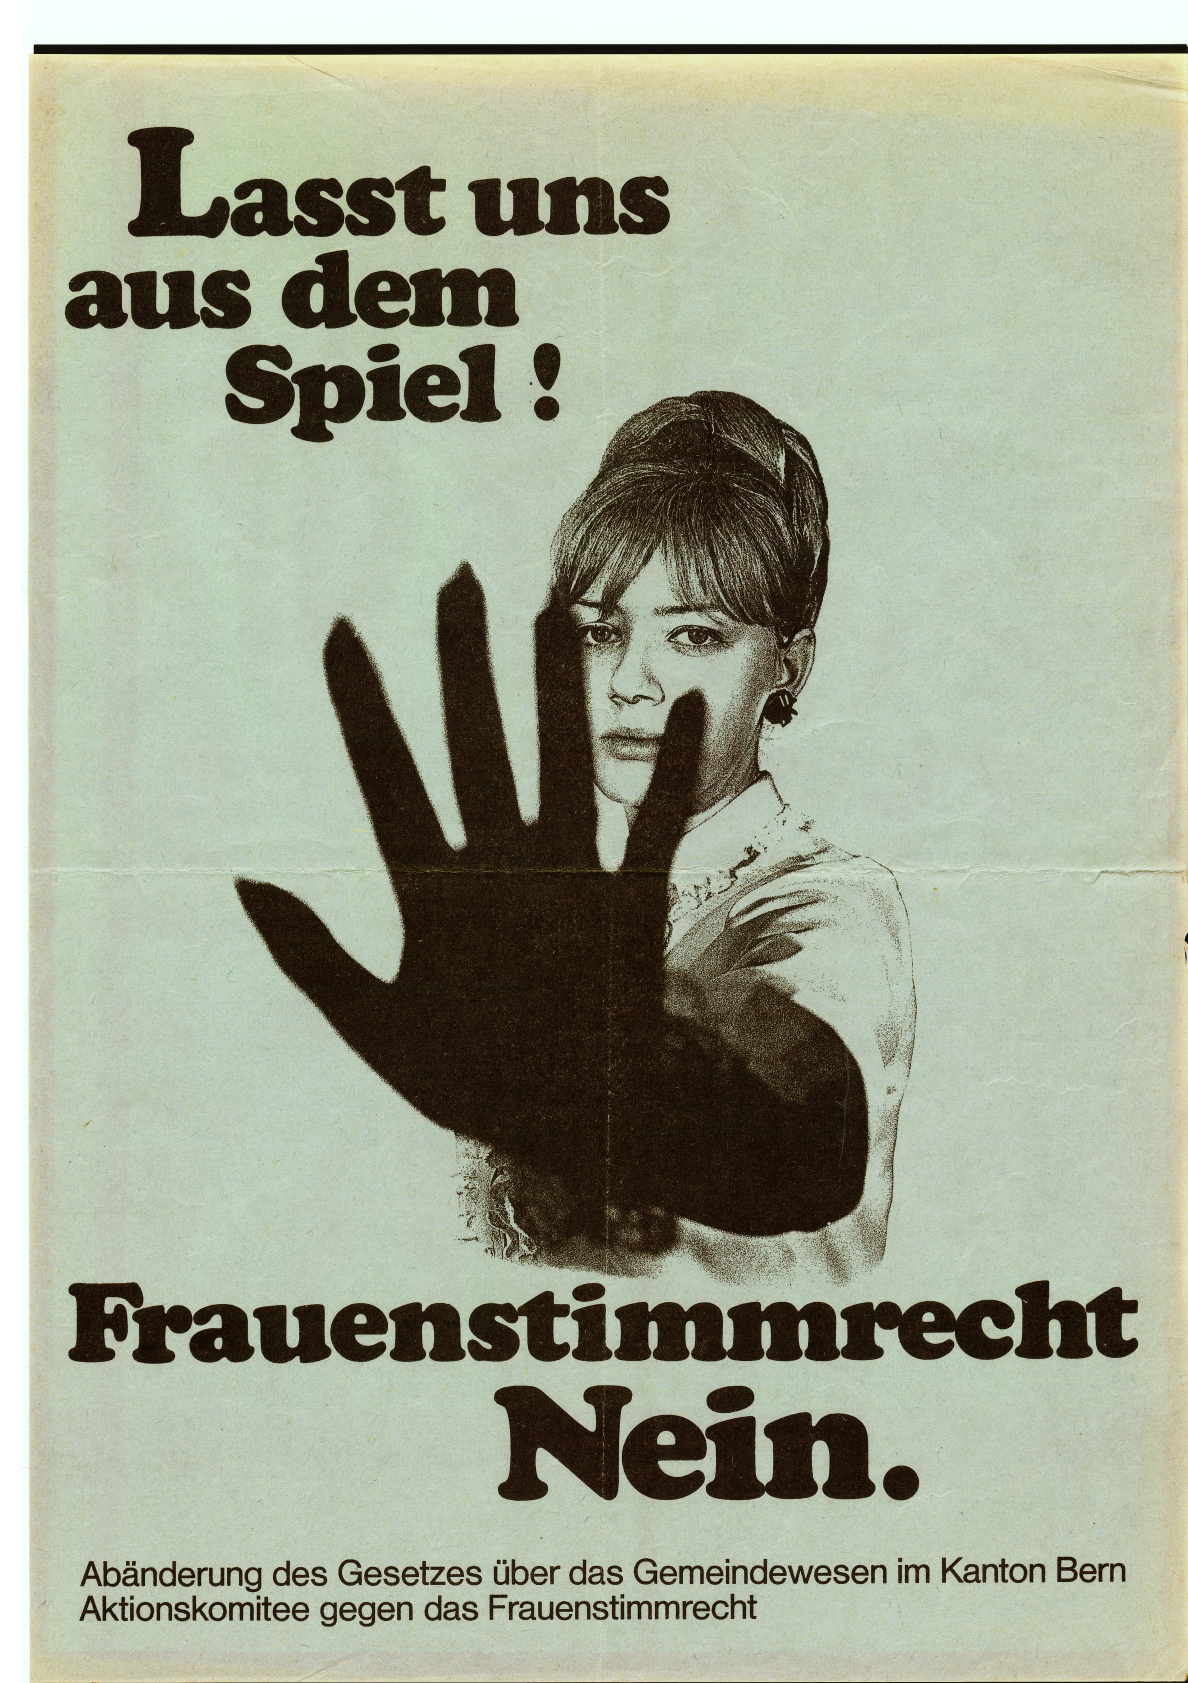 Comité de acción contra el derecho al voto femenino, 1968 © Colección de pósters de la Fondation Gosteli 